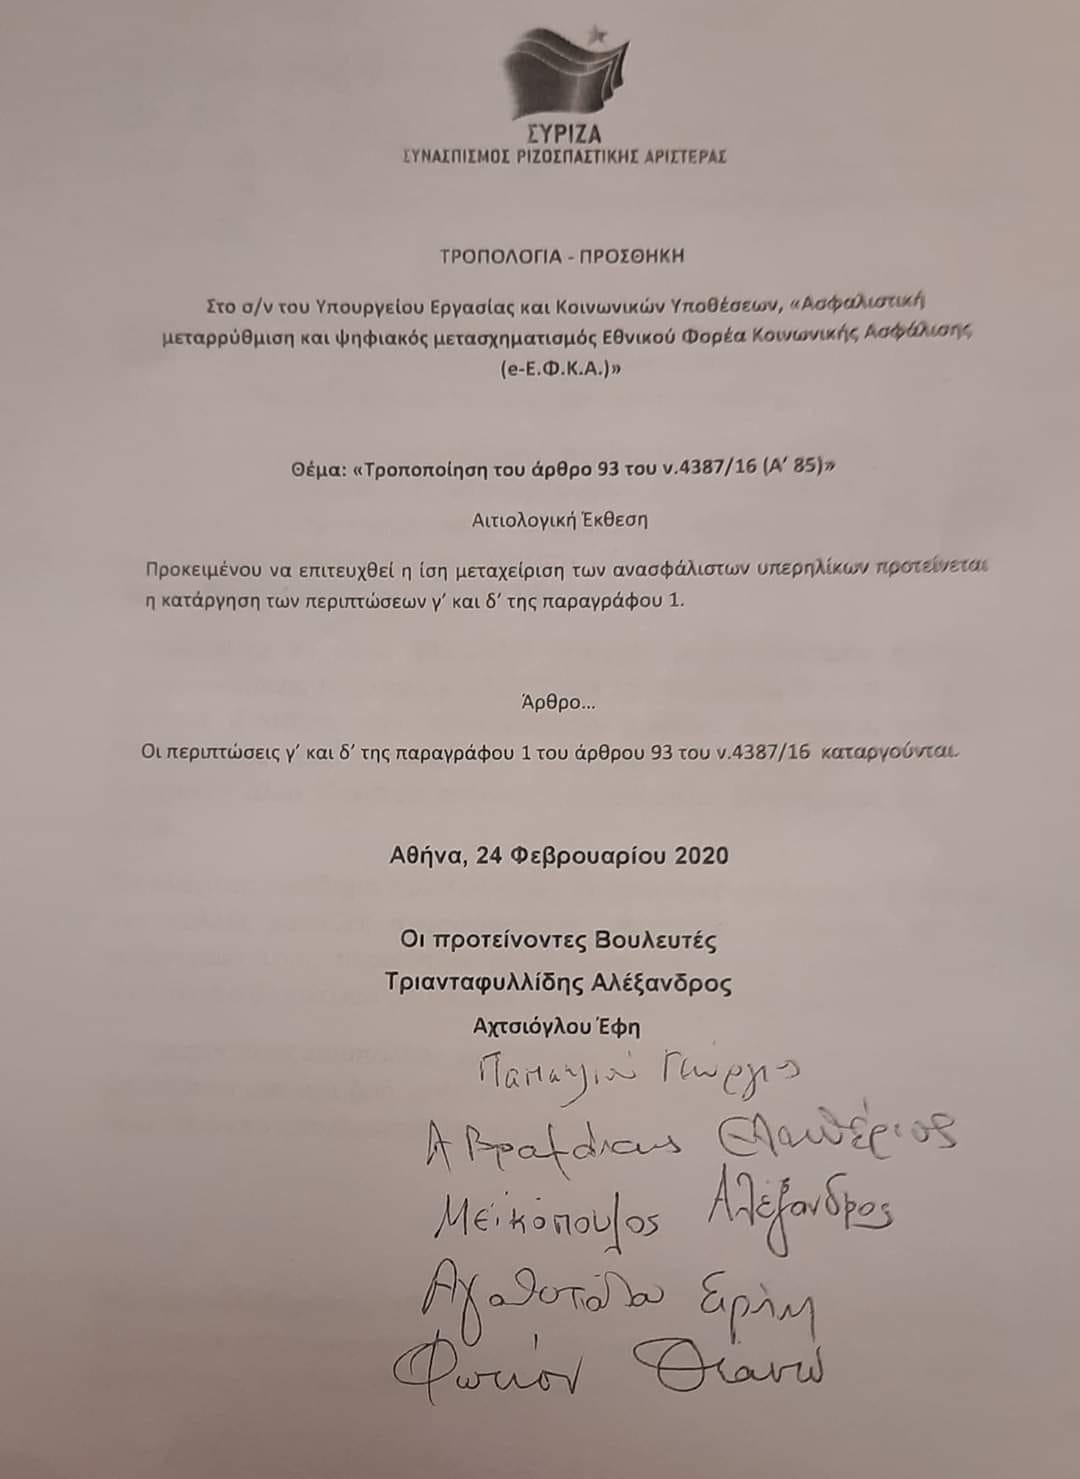 Το κείμενο της τροπολογίας των βουλευτών του ΣΥΡΙΖΑ που απορρίφθηκε τον Φεβρουάριο του 2020 από την Κυβέρνηση Μητσοτάκη